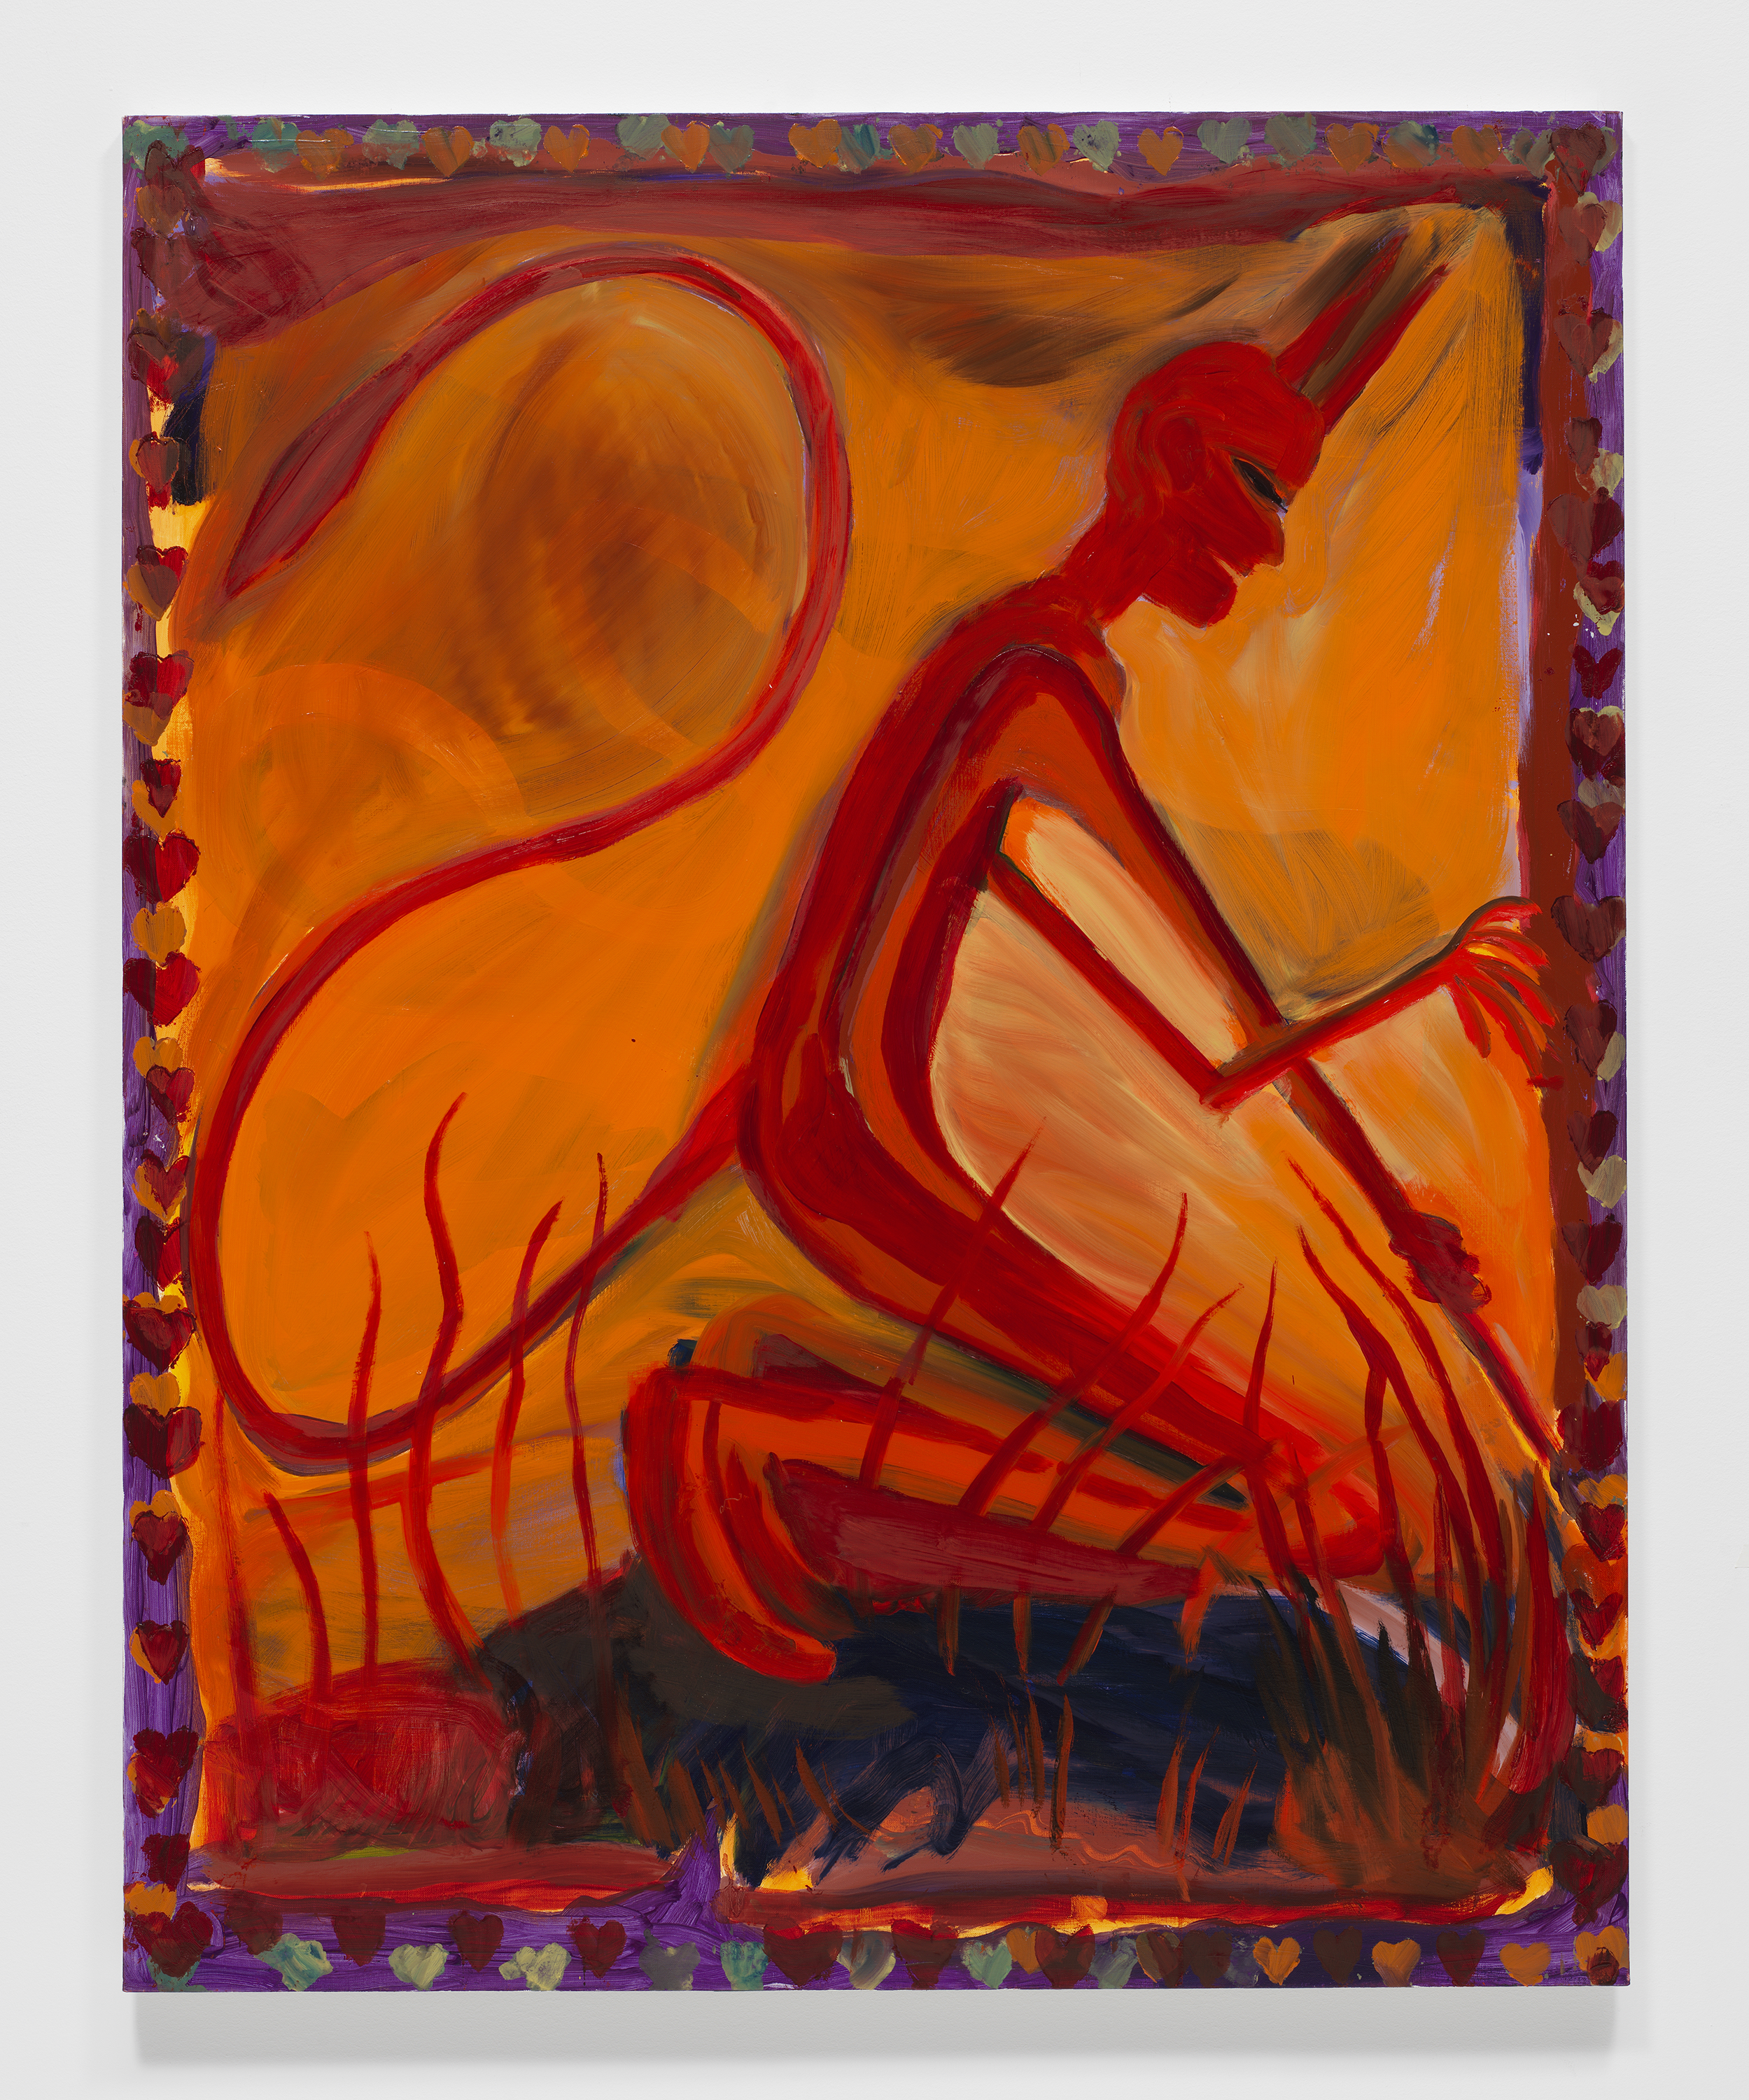   Josh Smith,   Devil , 2019, Oil on linen, 60 x 48 inches, 152.4 x 121.9 cm 